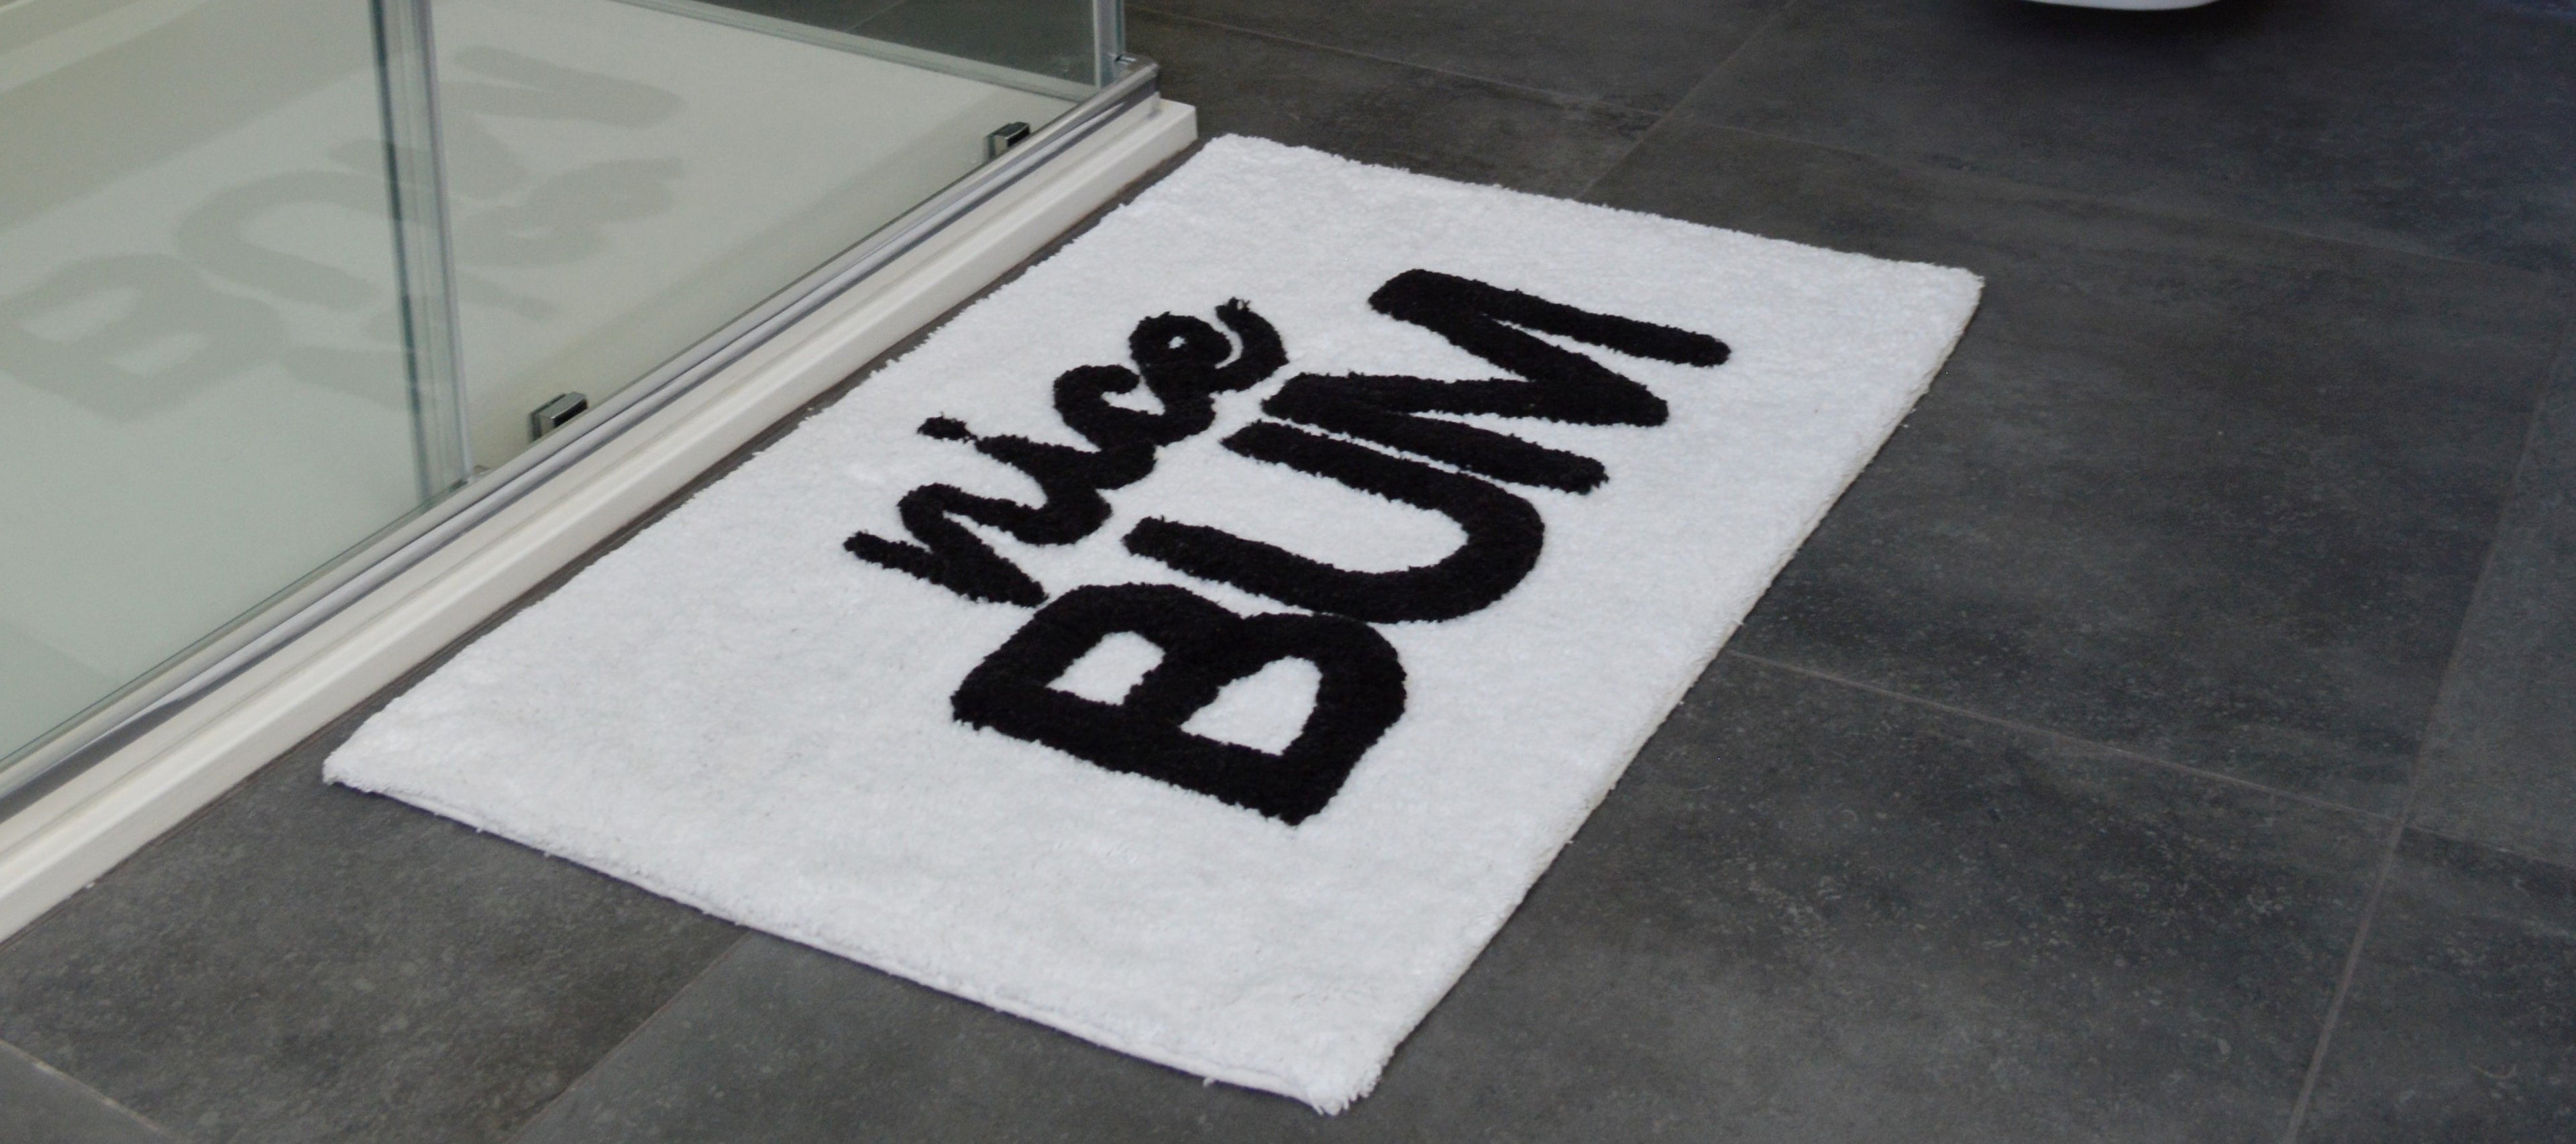 slogan bath mat with 'nice bum' text